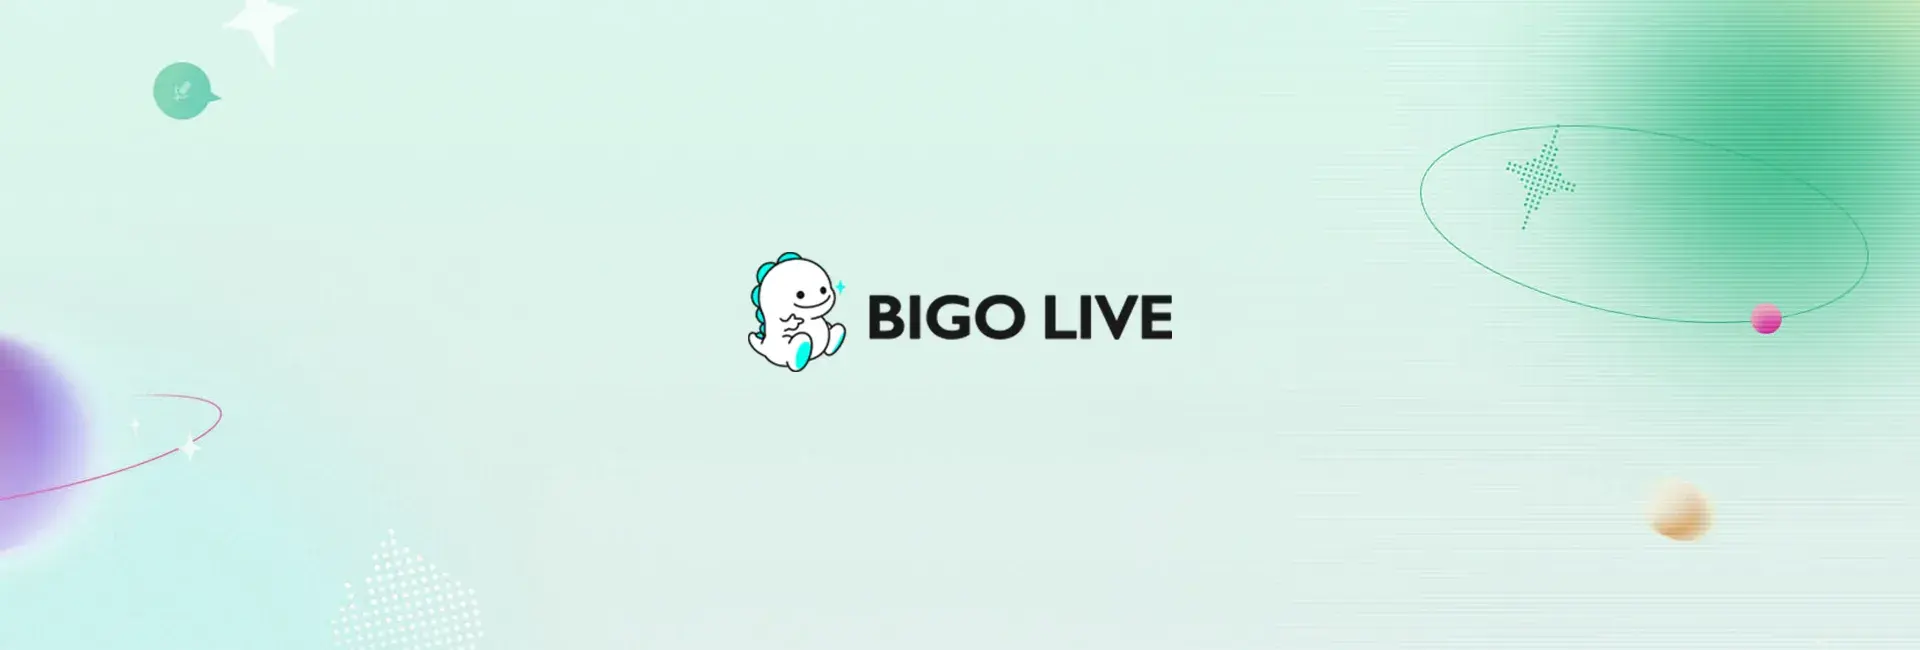 Bigo Live - 3150 Diamonds (Global)